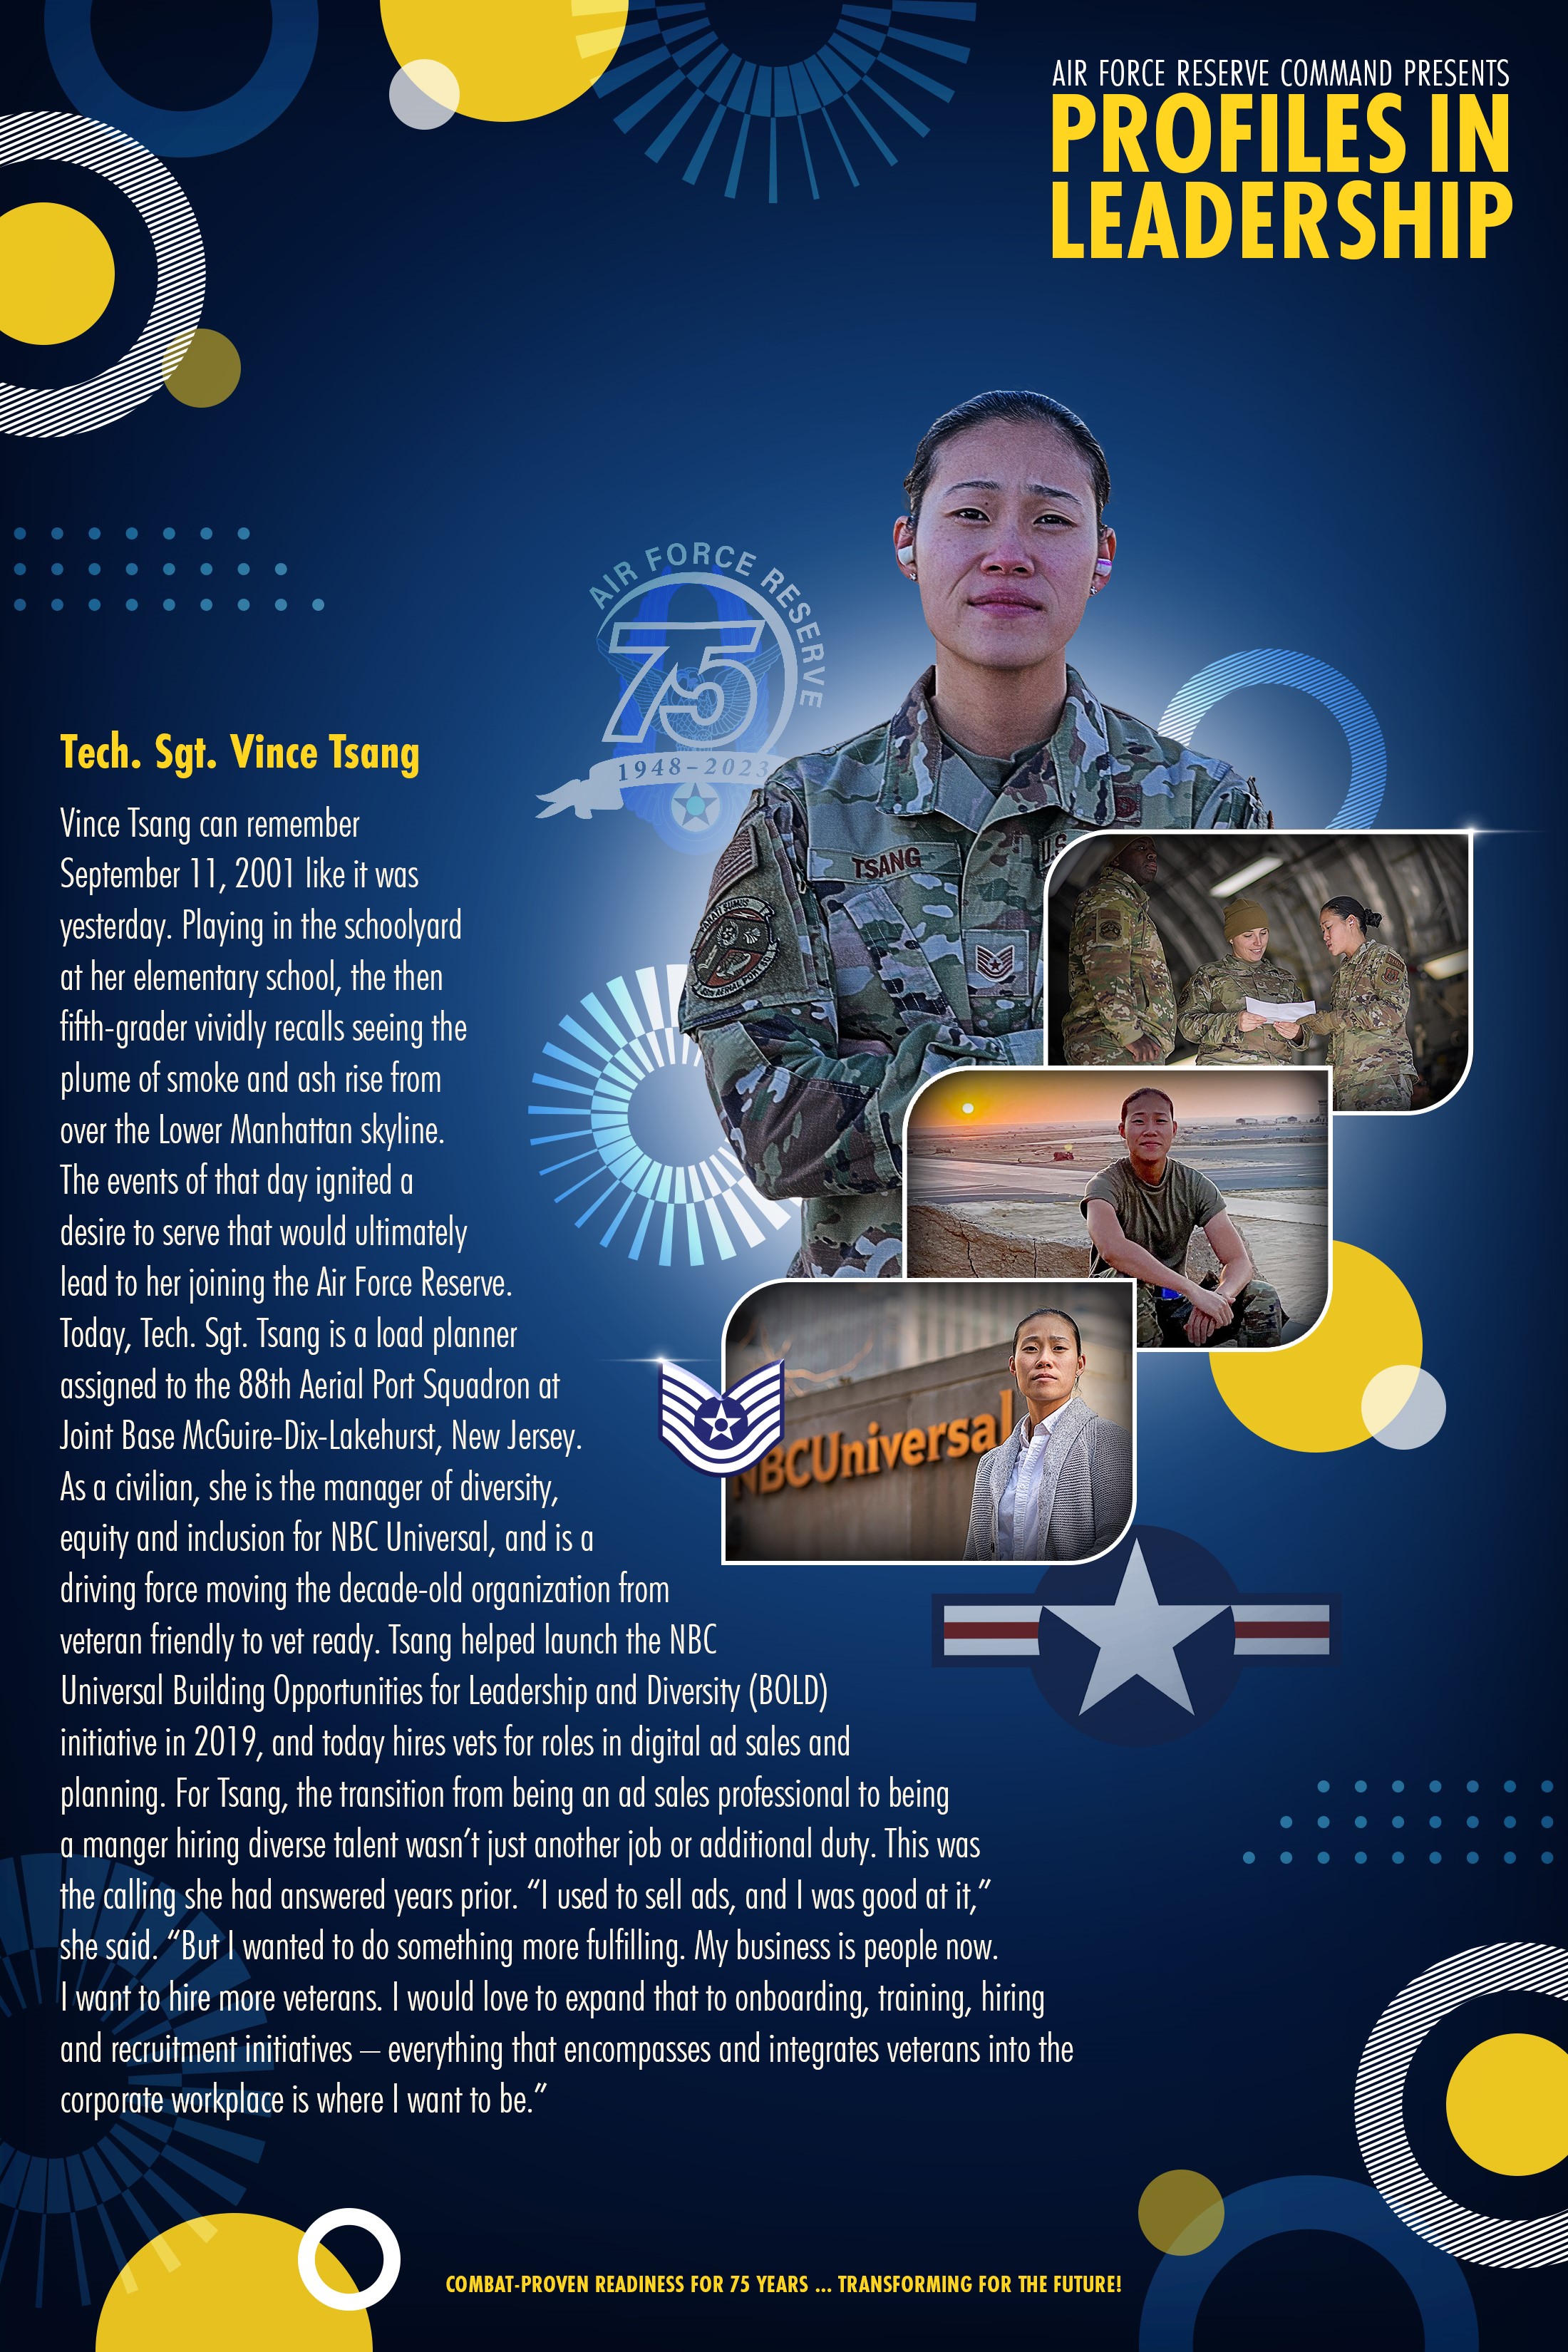 Tech. Sgt. Vince Tsang